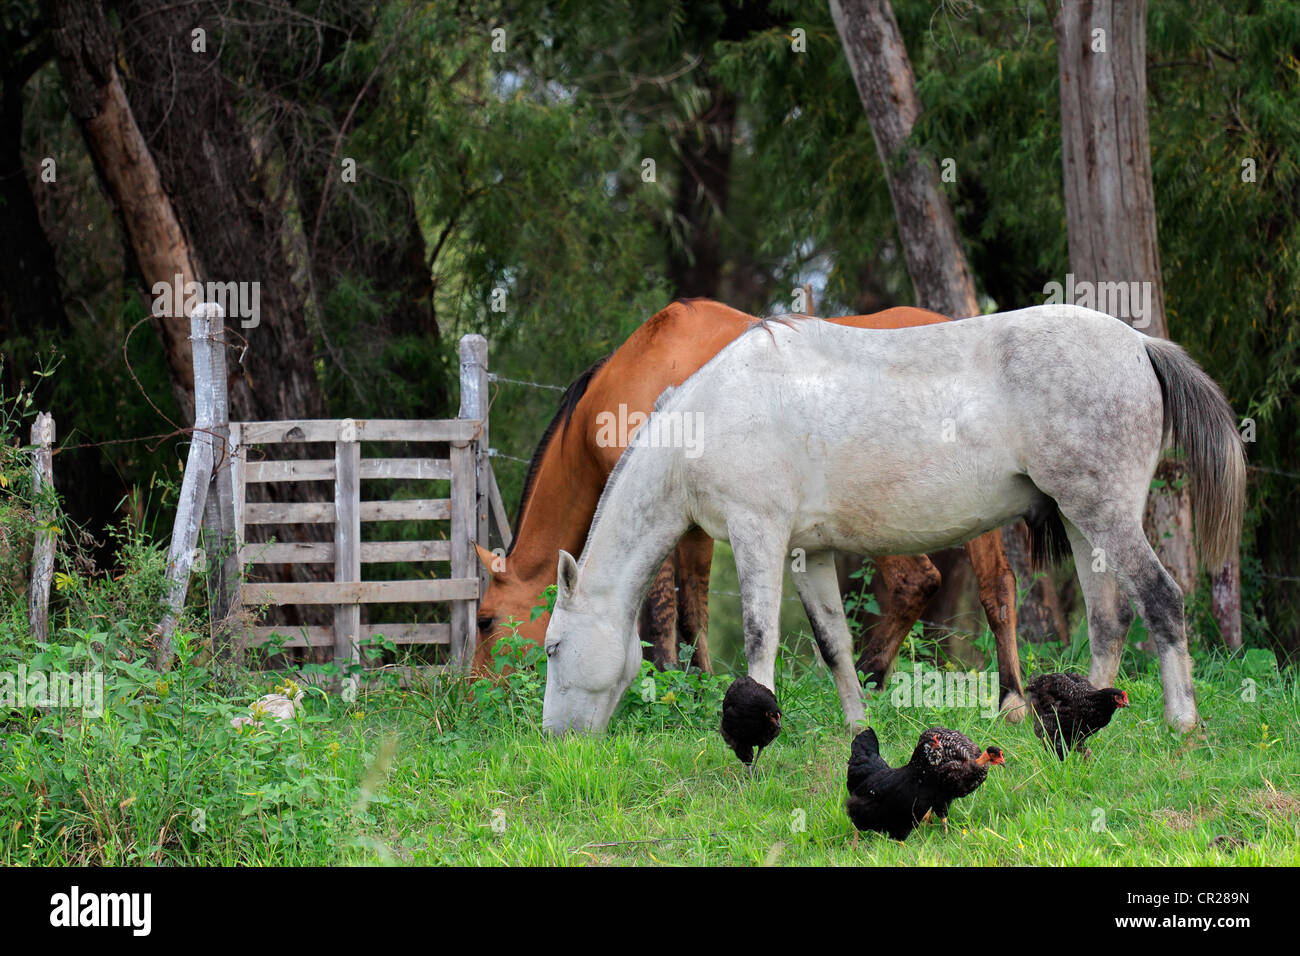 Caballos y pollos en una finca rural con exuberantes verdes pastizales Foto de stock